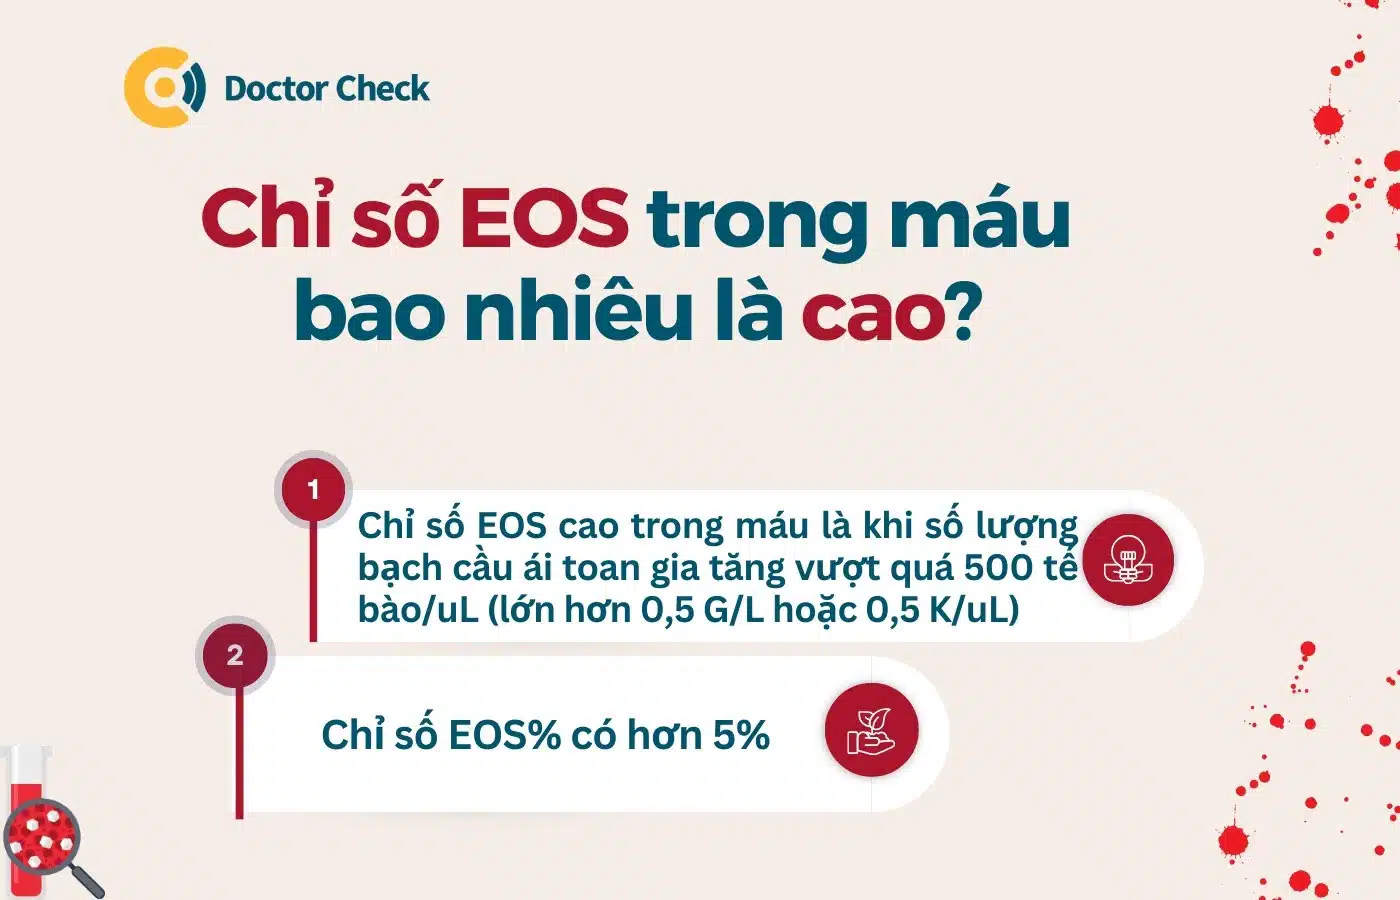 Chỉ số EOS trong máu cao là bao nhiêu?